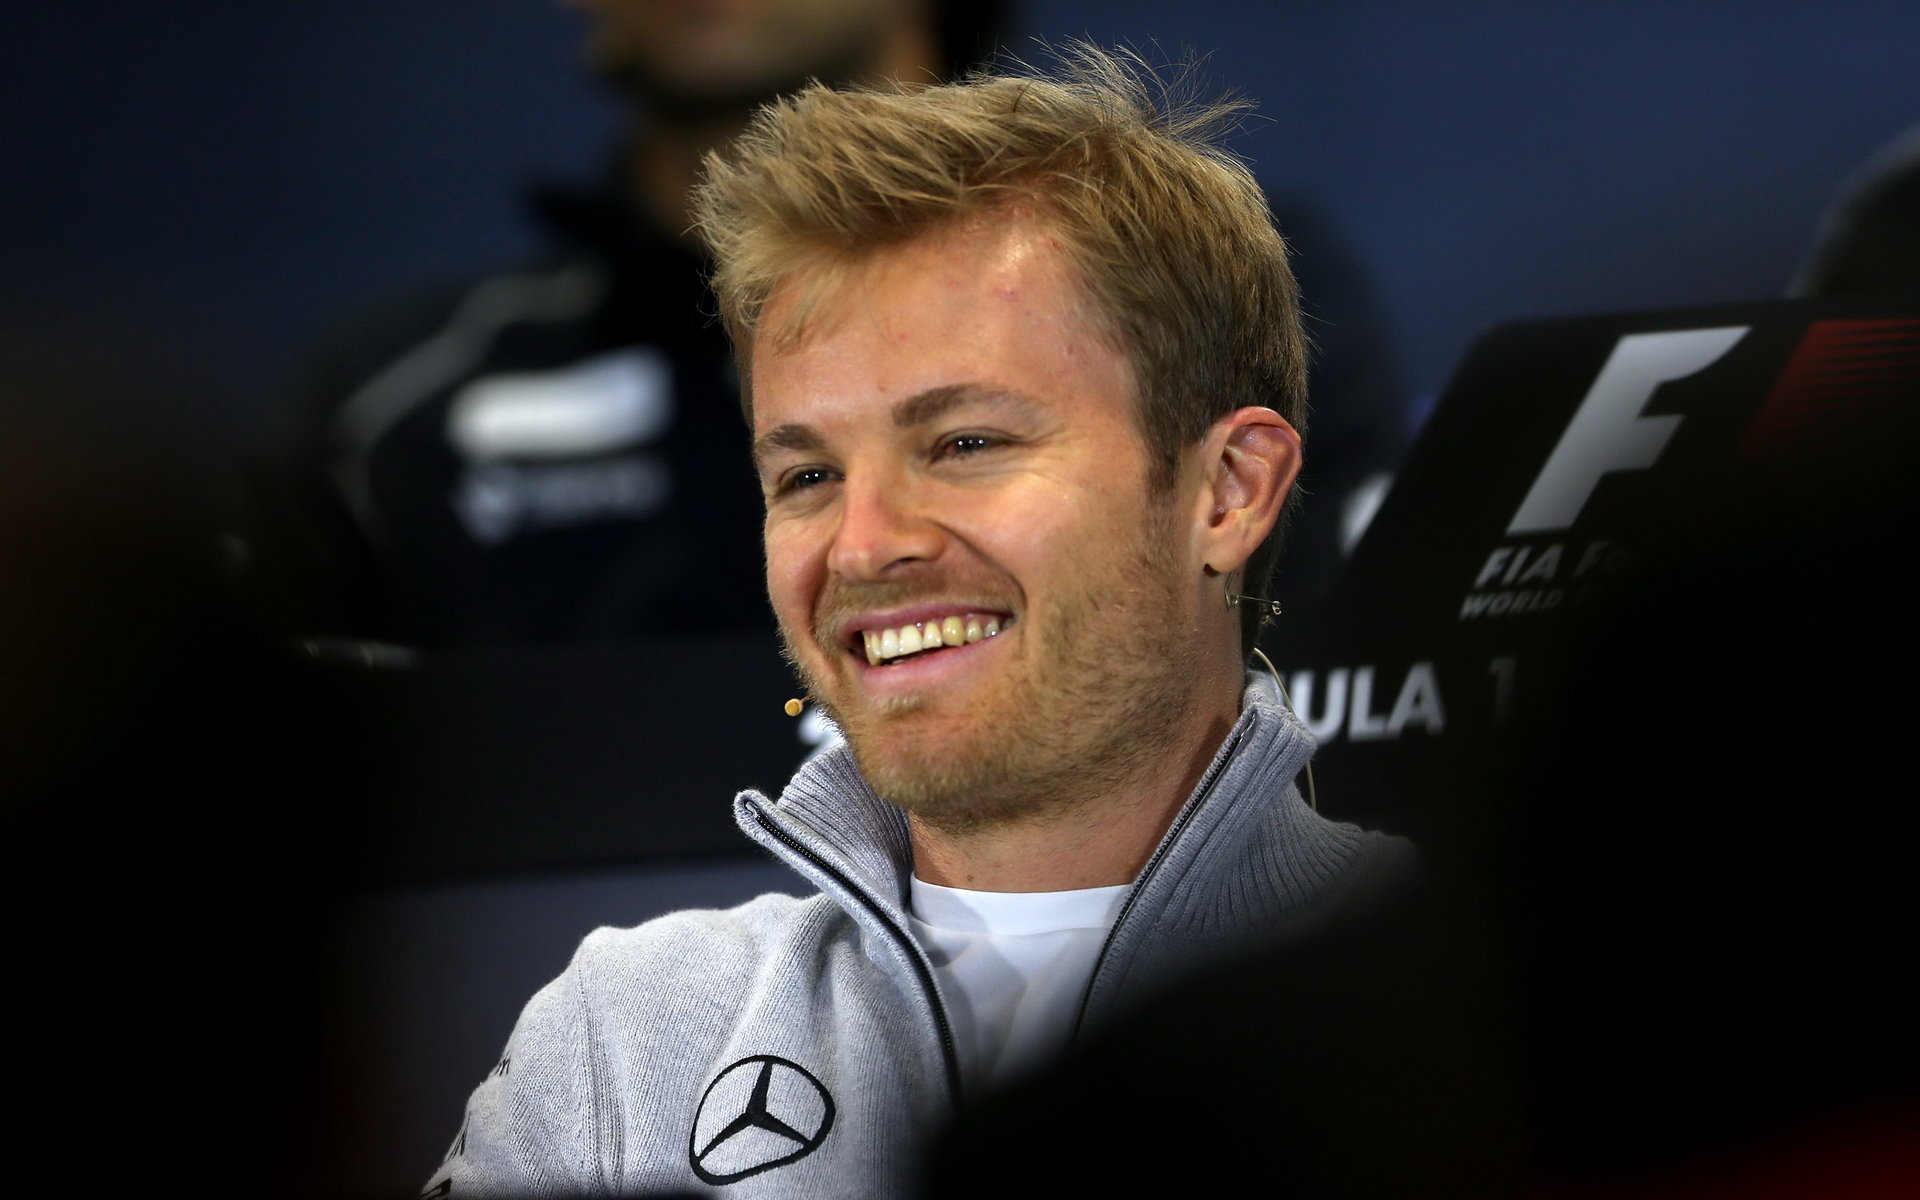 Rosberg téměř celý trénink byl před Hamiltonem. Nakonec s ním prohrál